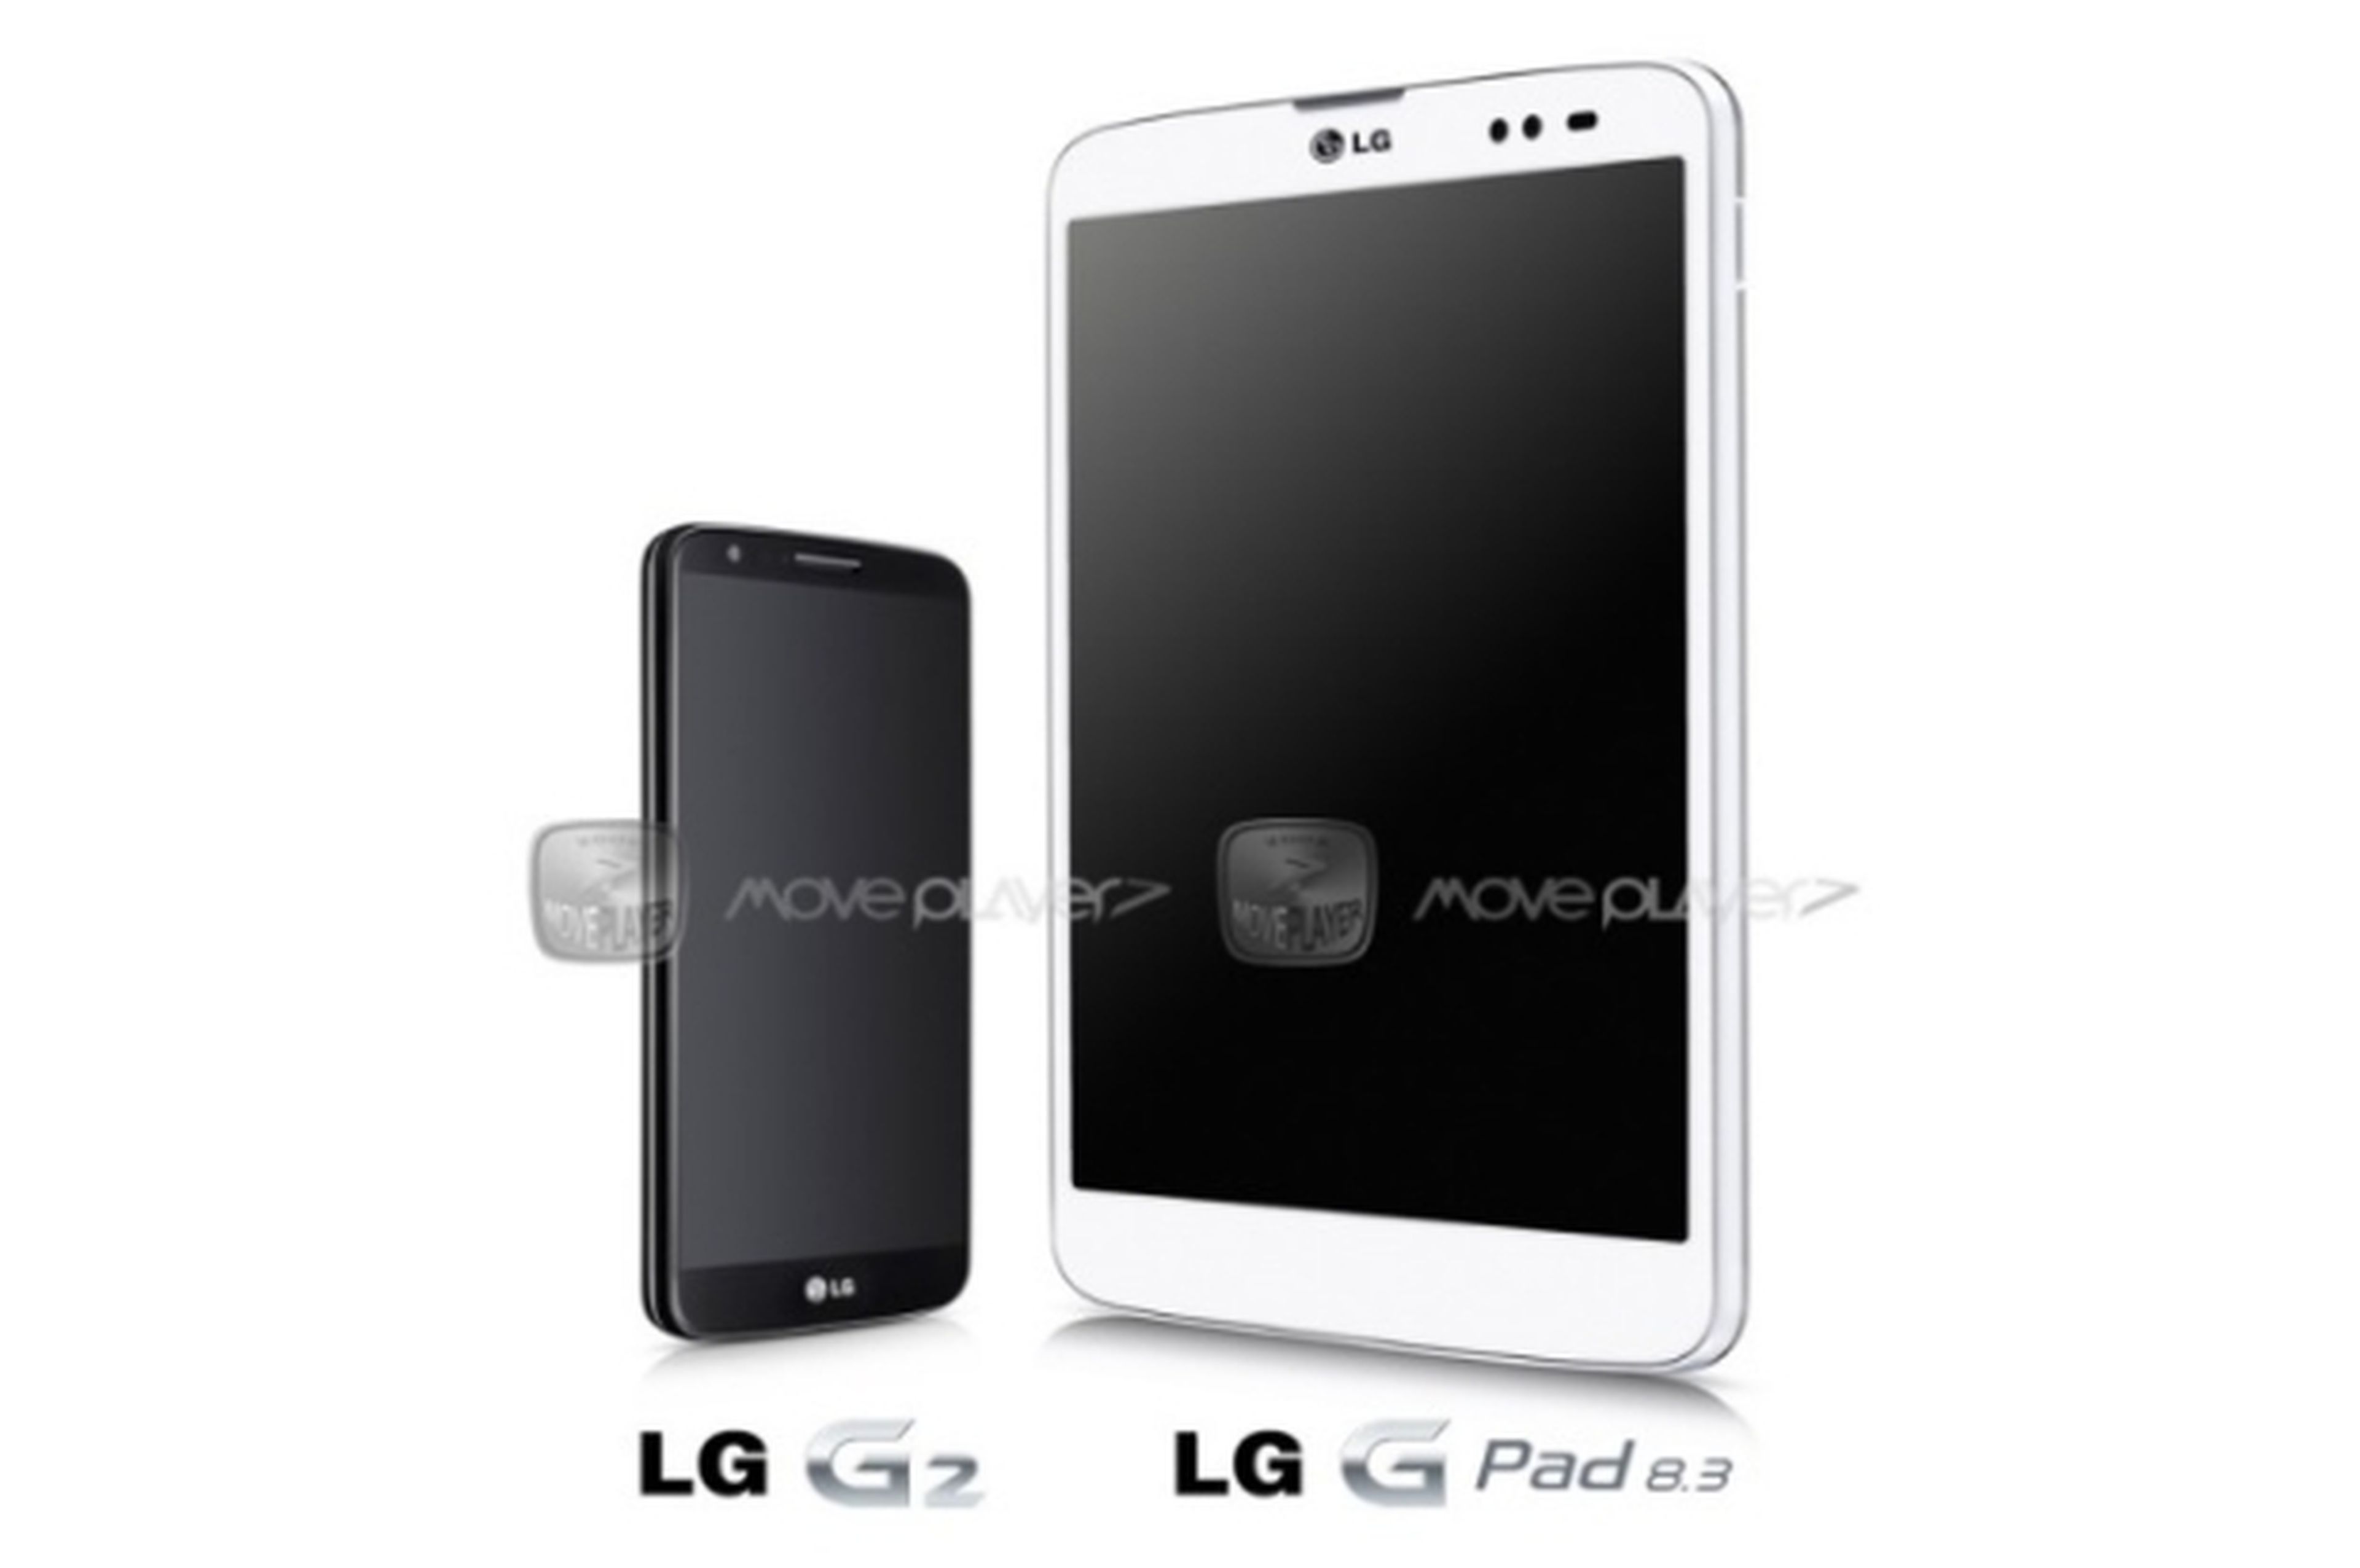 LG G Pad 8.3, la nueva tablet de LG, se presentará en IFA 2013